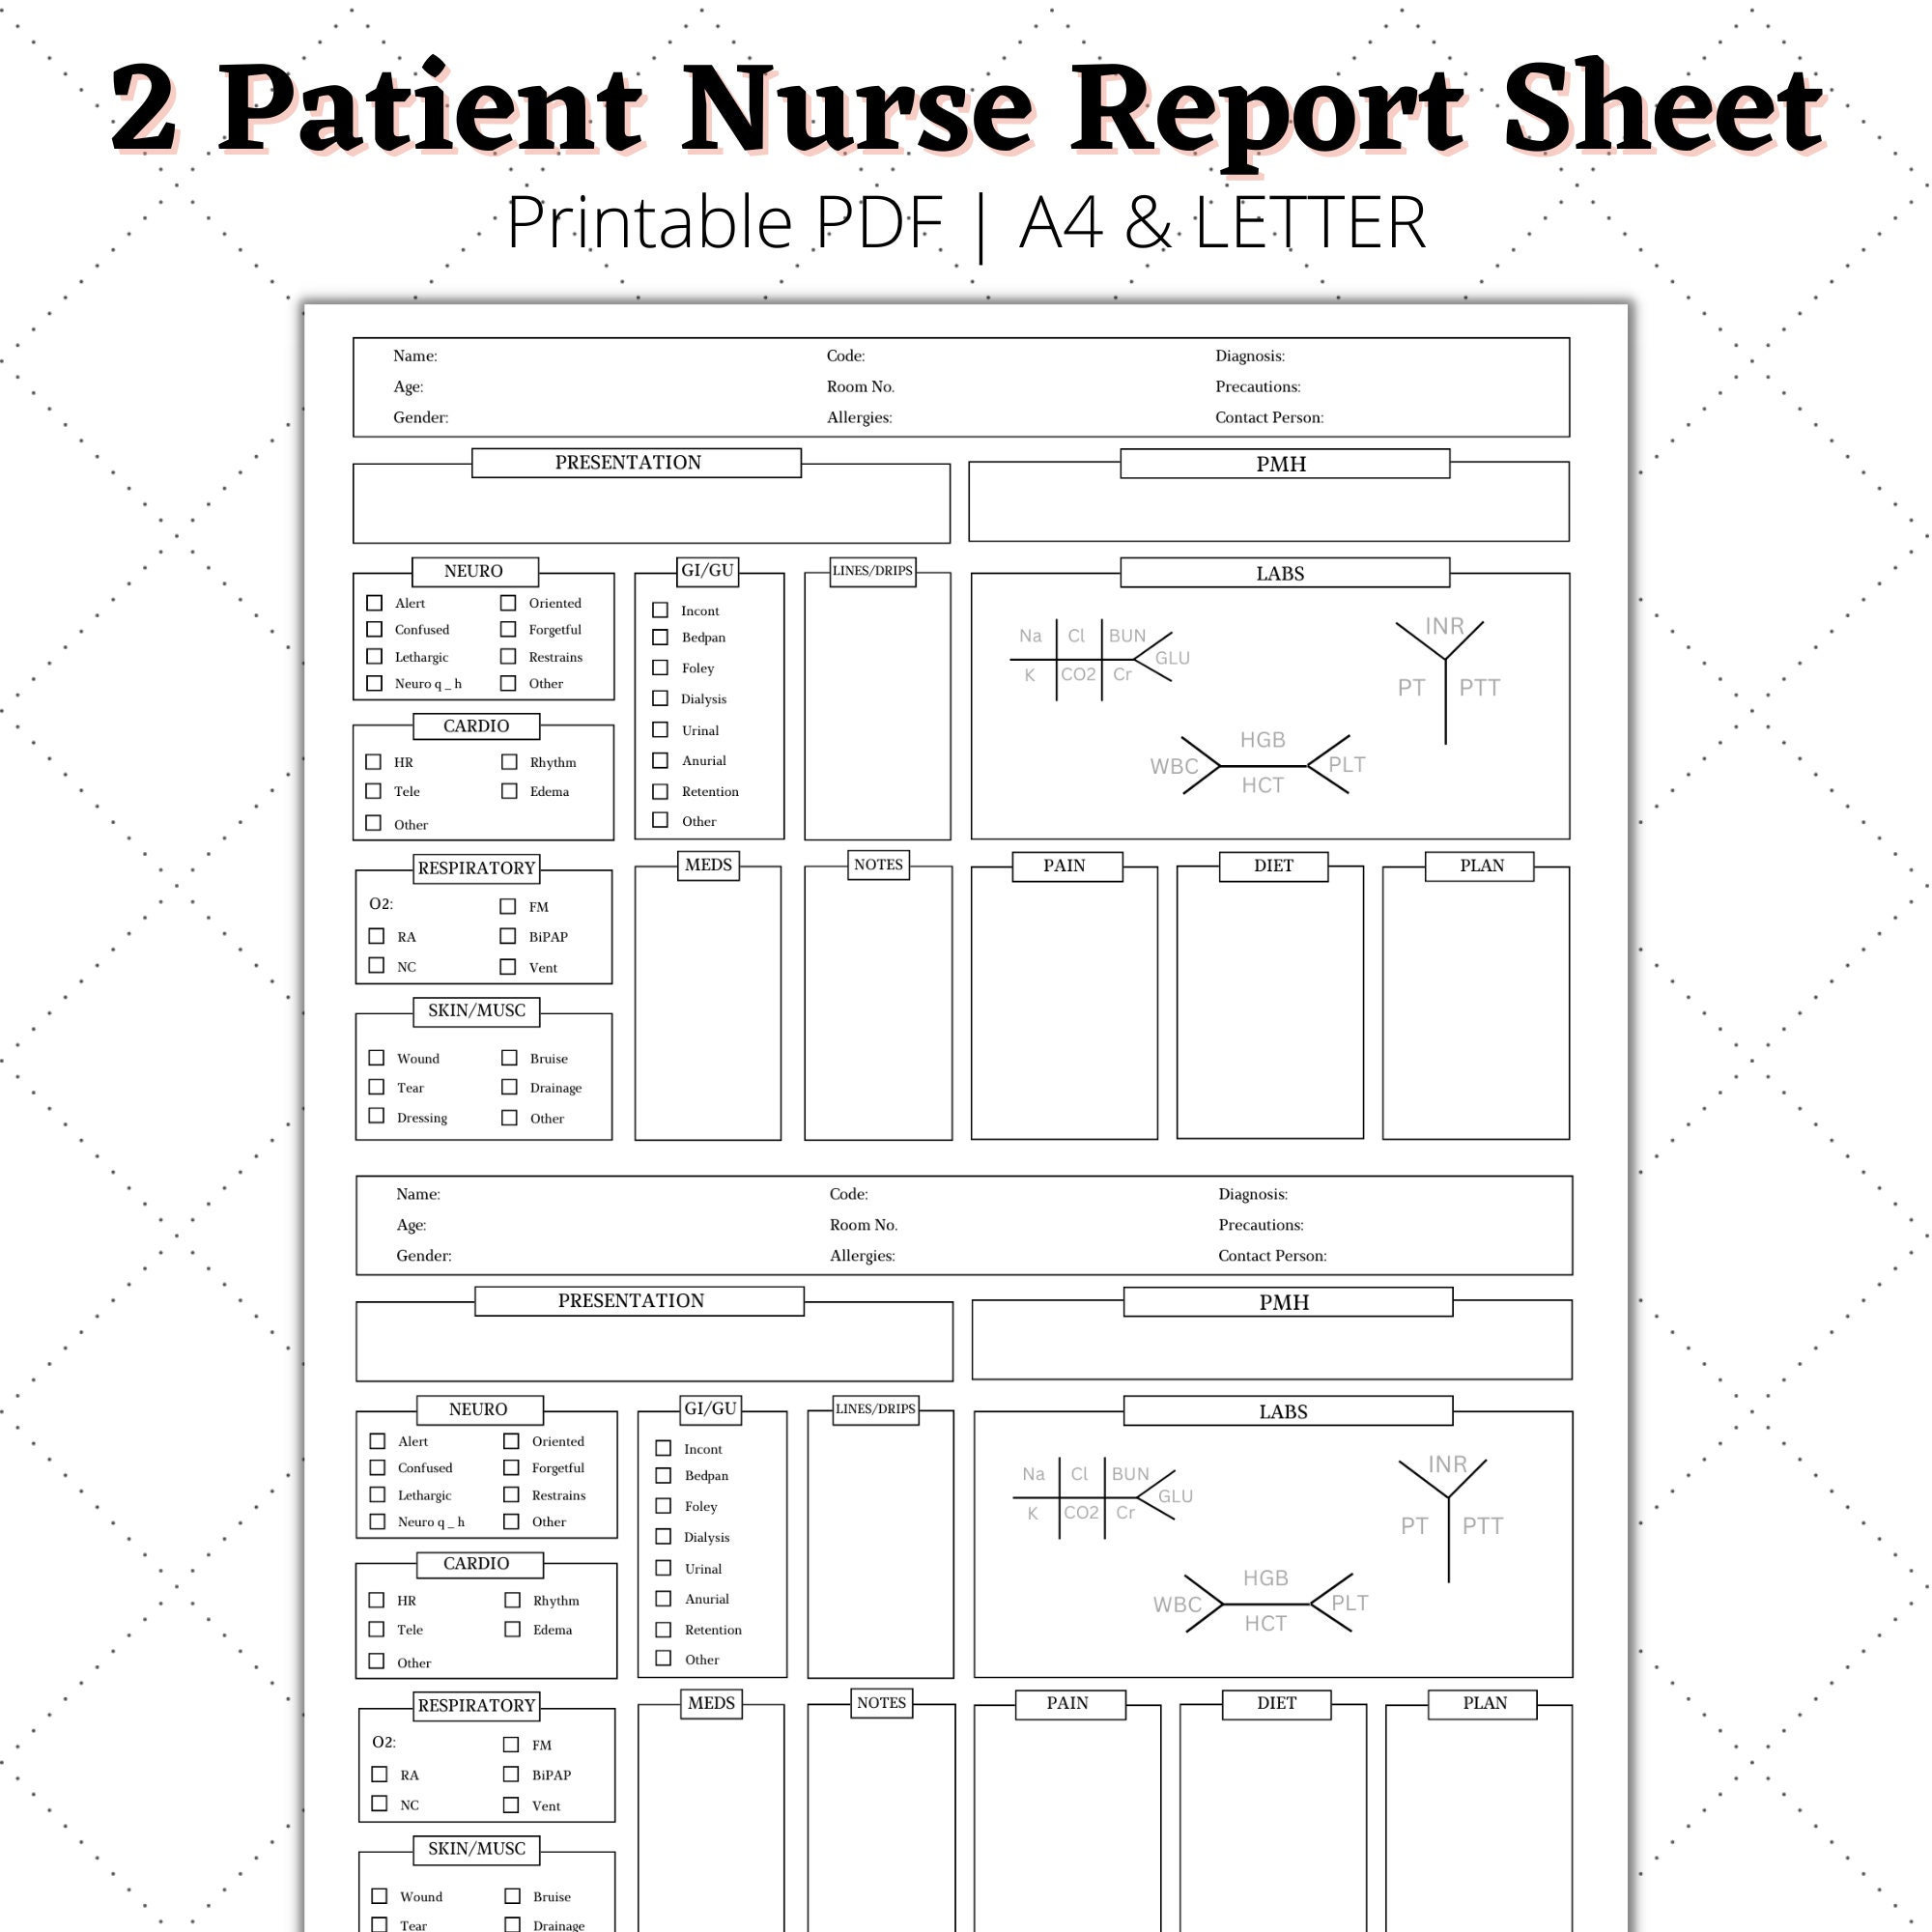 neuro icu report sheet